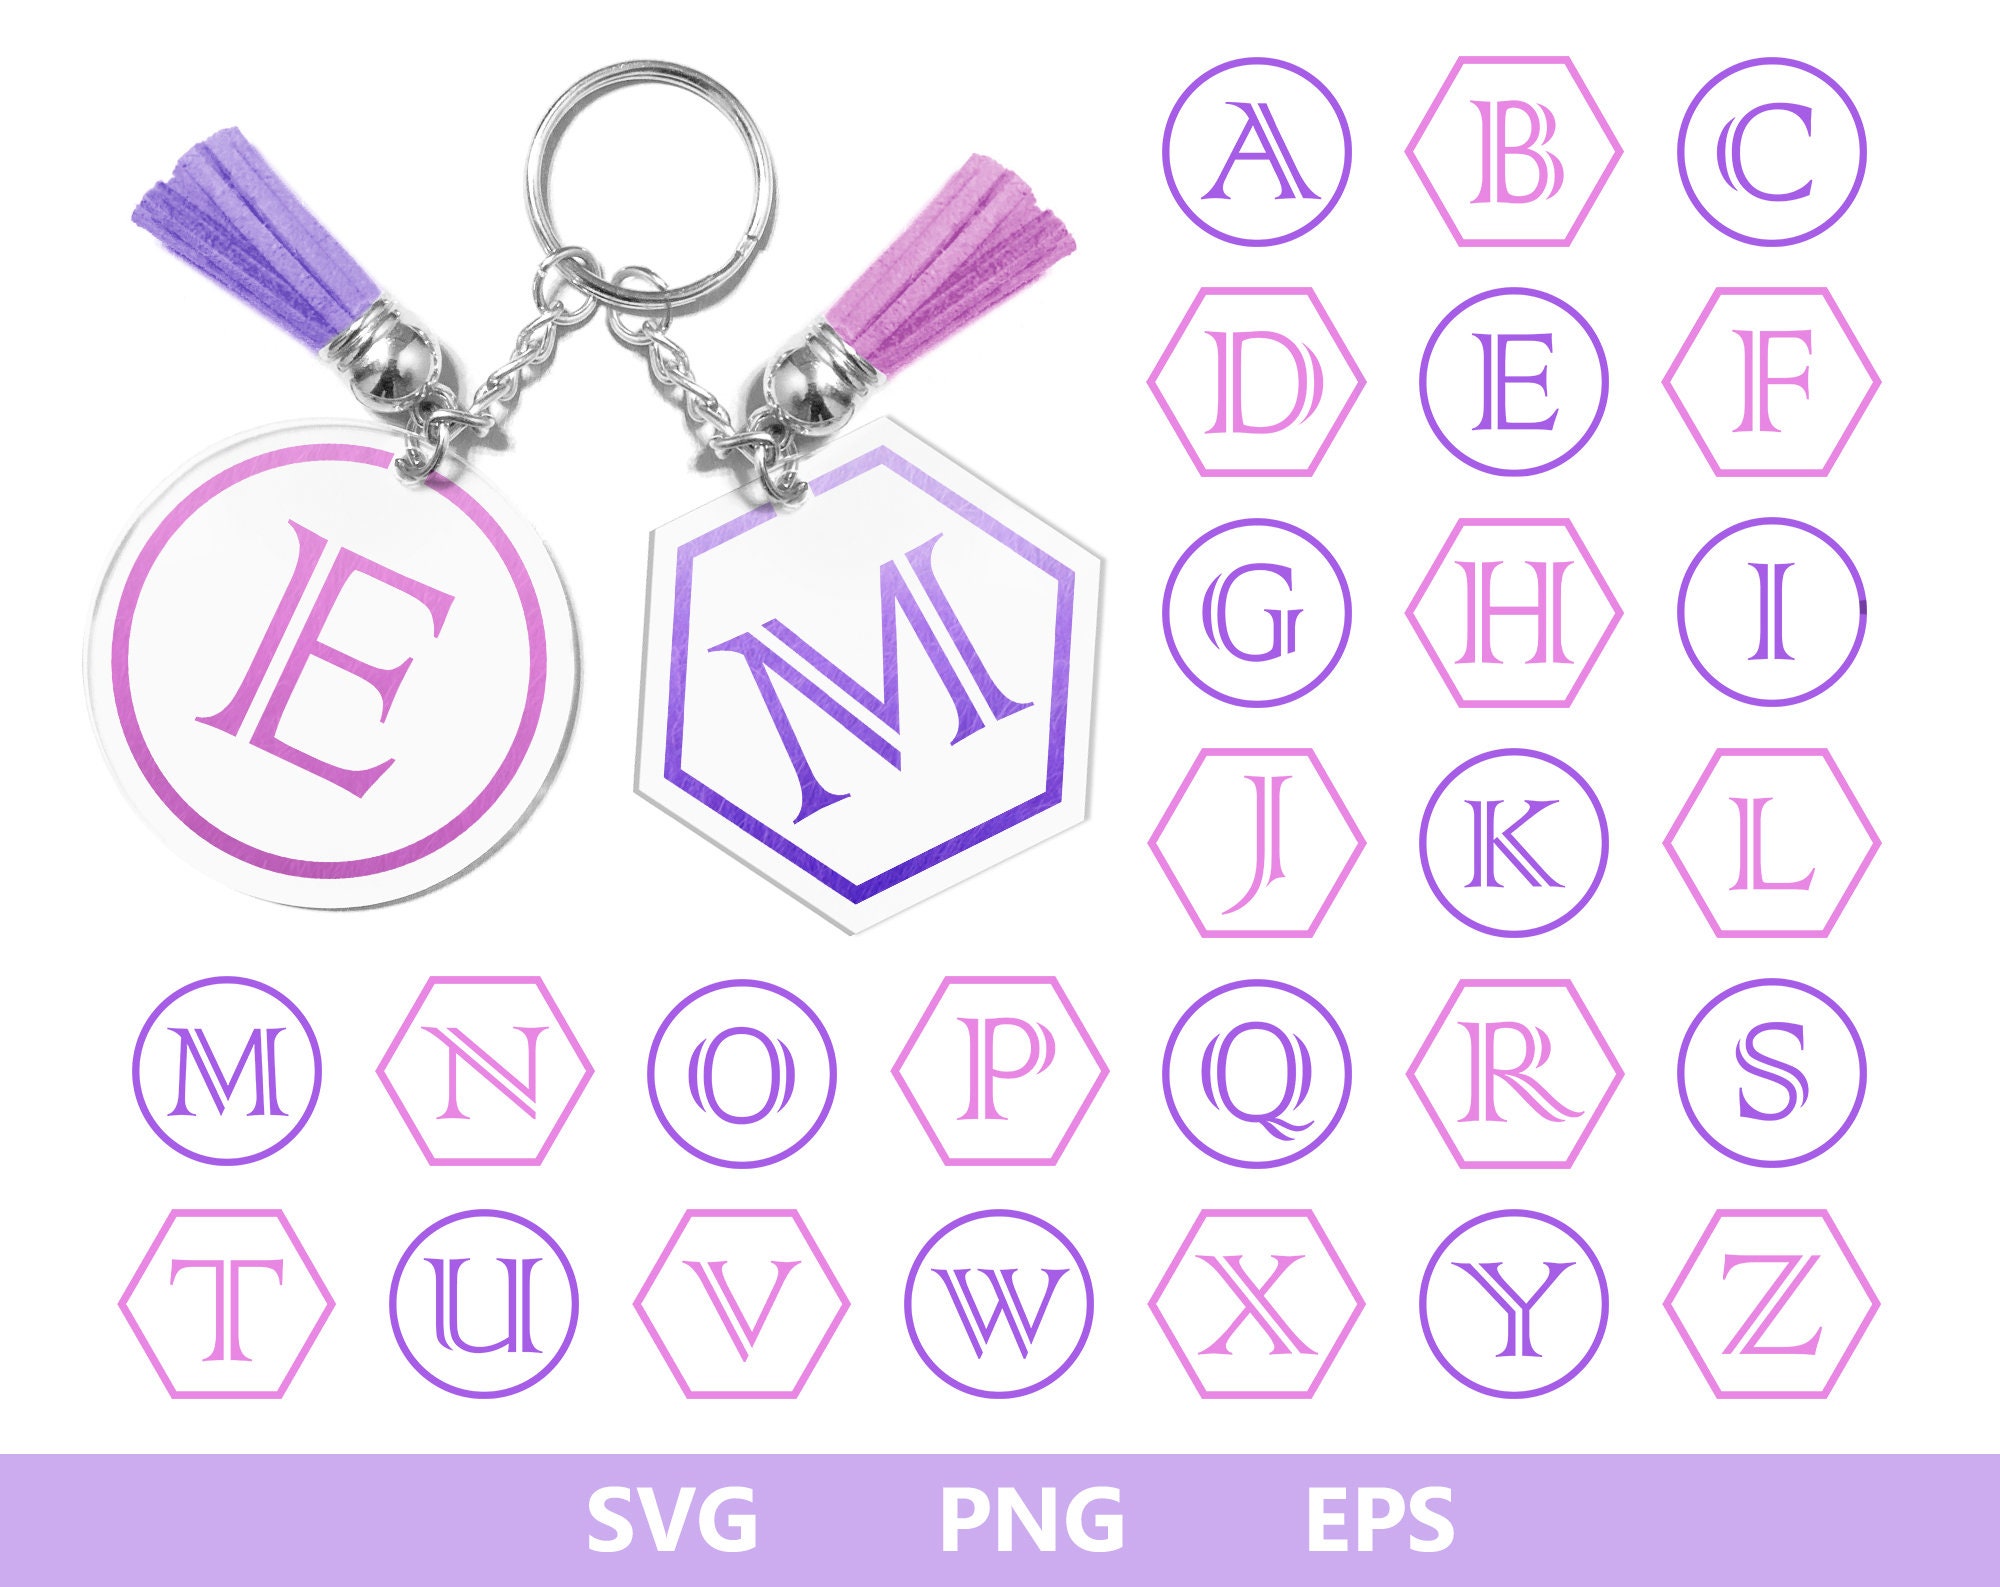 Download Monogram SVG keychain monogram svg alphabet key ring svg | Etsy